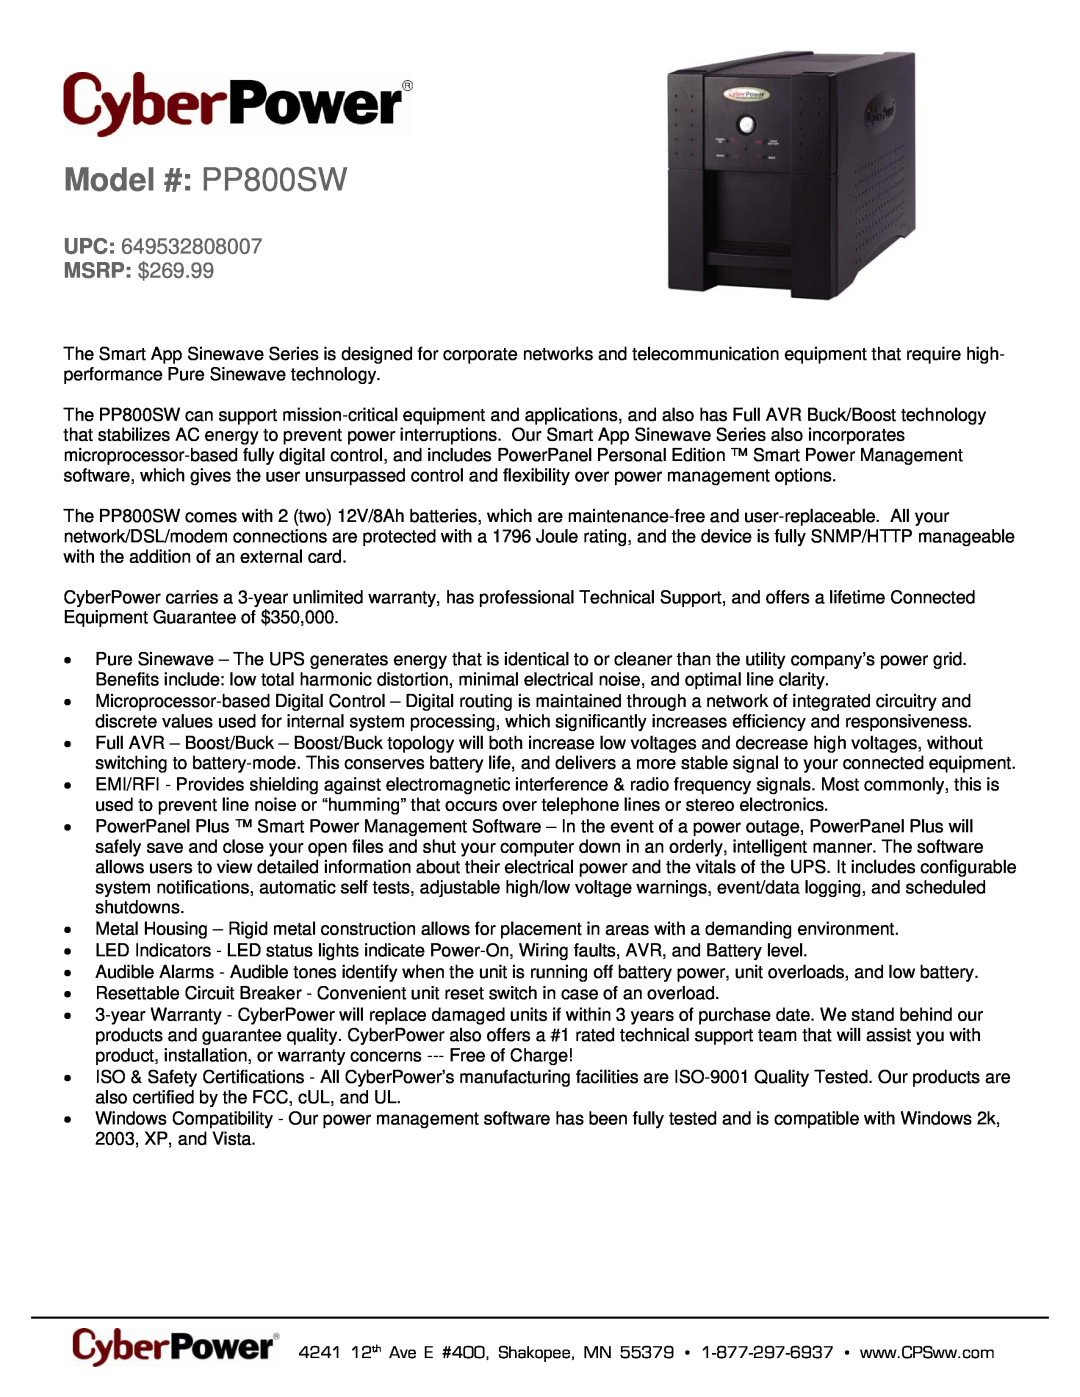 CyberPower Systems 649532808007 warranty Model # PP800SW, UPC MSRP $269.99 